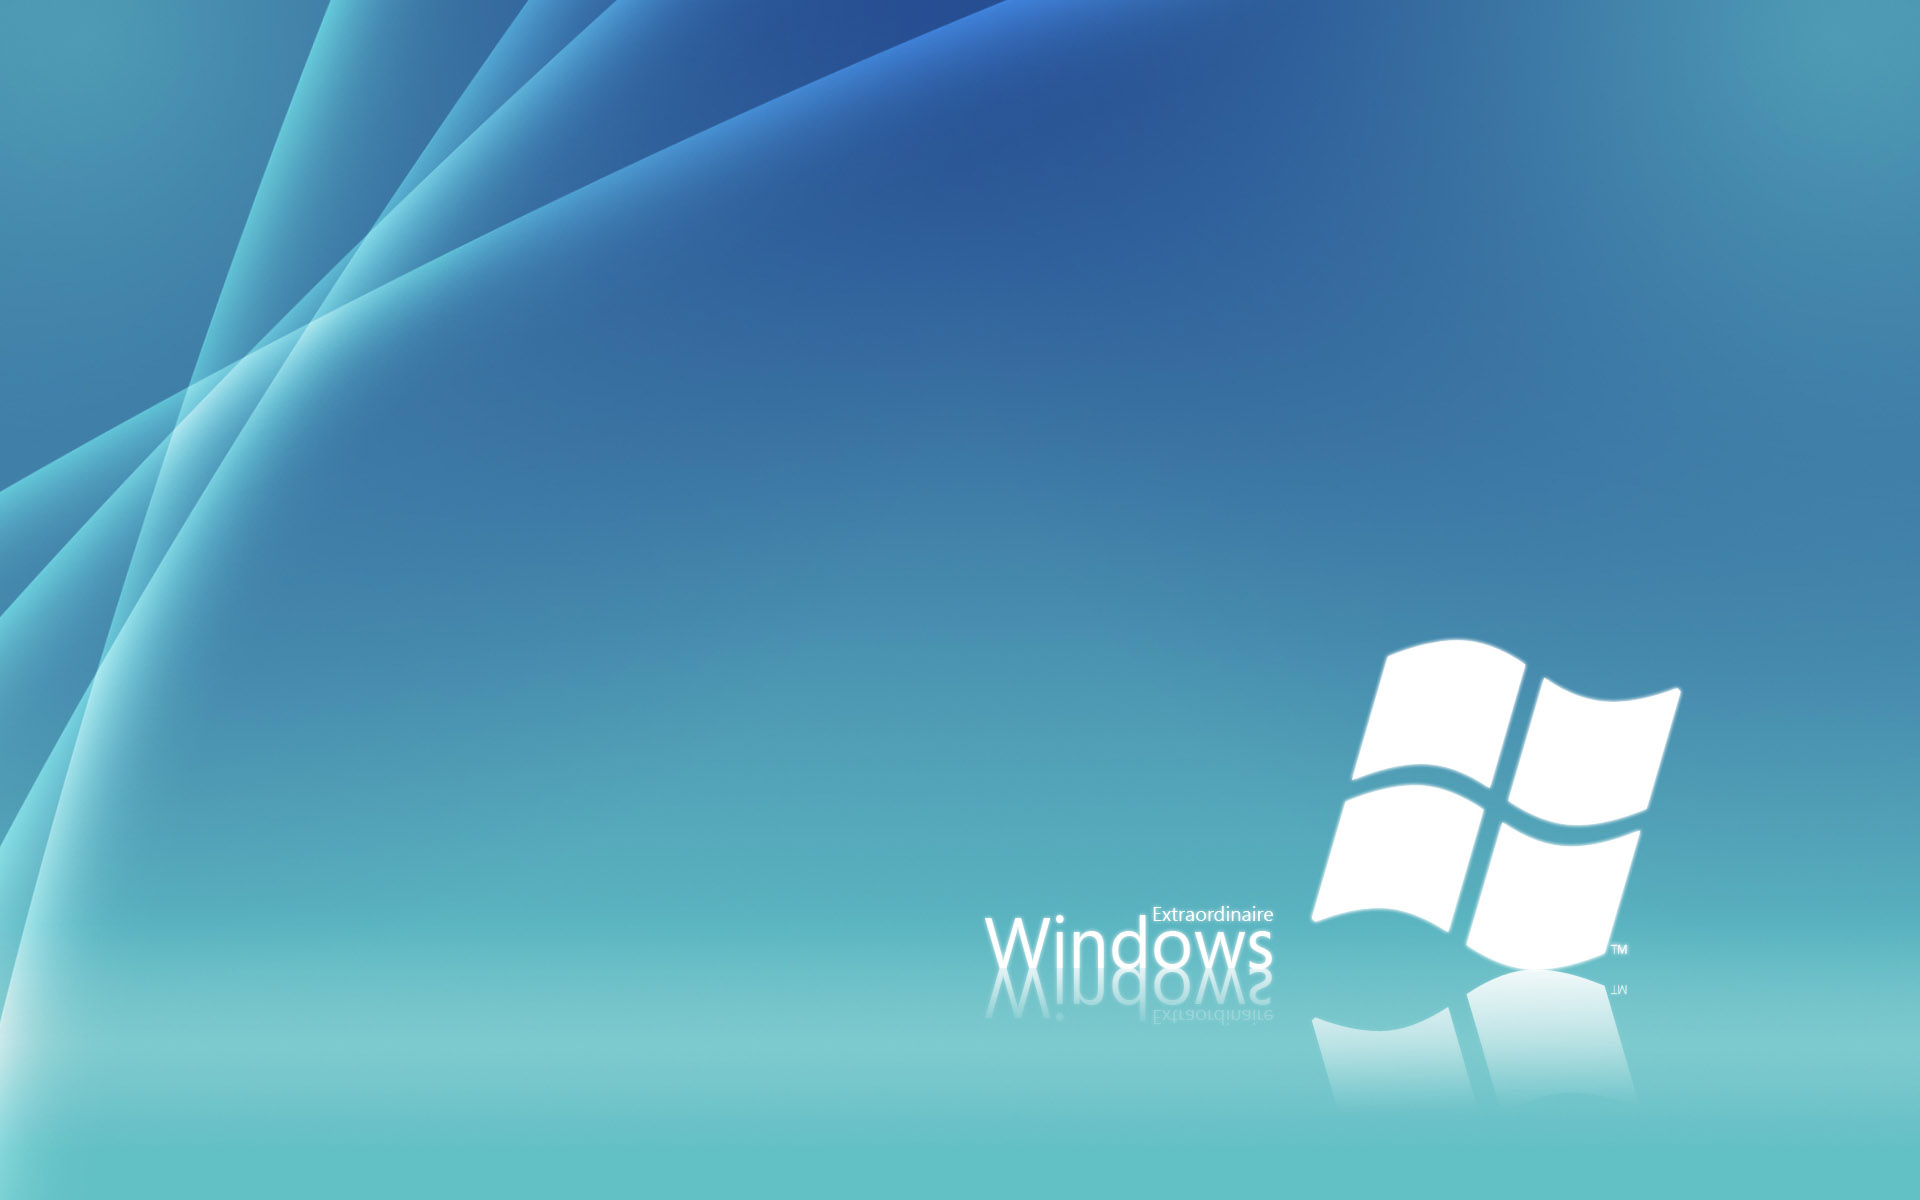 壁纸1920x1200Windows7 6 3壁纸 Windows7壁纸 Windows7图片 Windows7素材 系统壁纸 系统图库 系统图片素材桌面壁纸